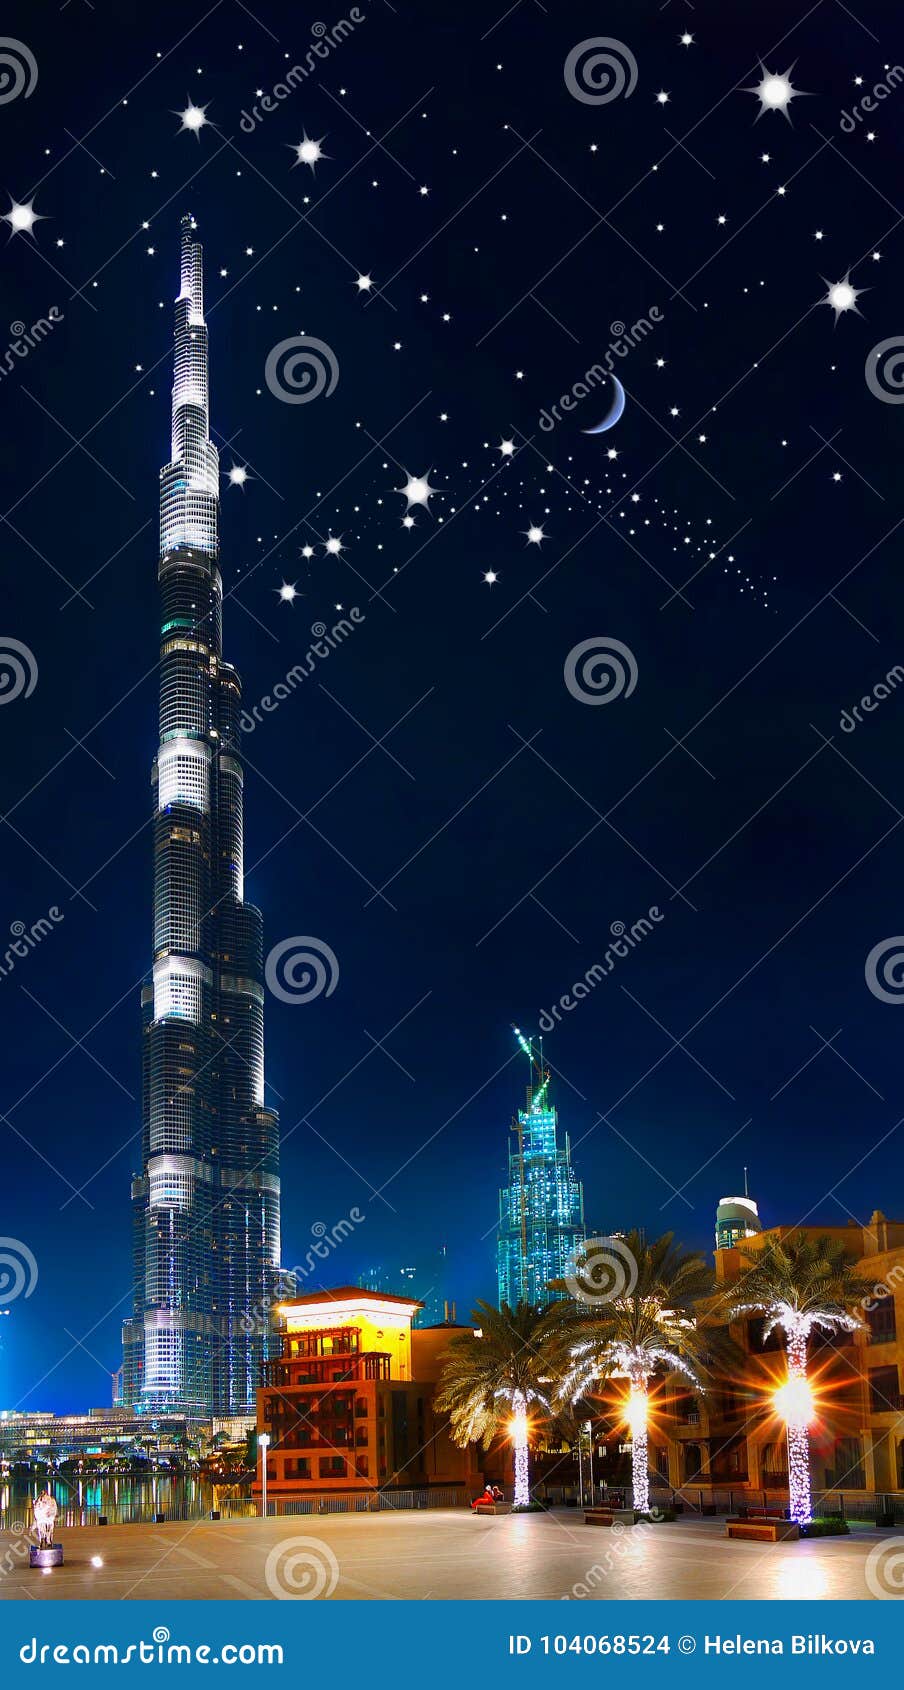 HD wallpaper Burj Khalifa Dubai city cityscape building skyscraper  architecture  Wallpaper Flare